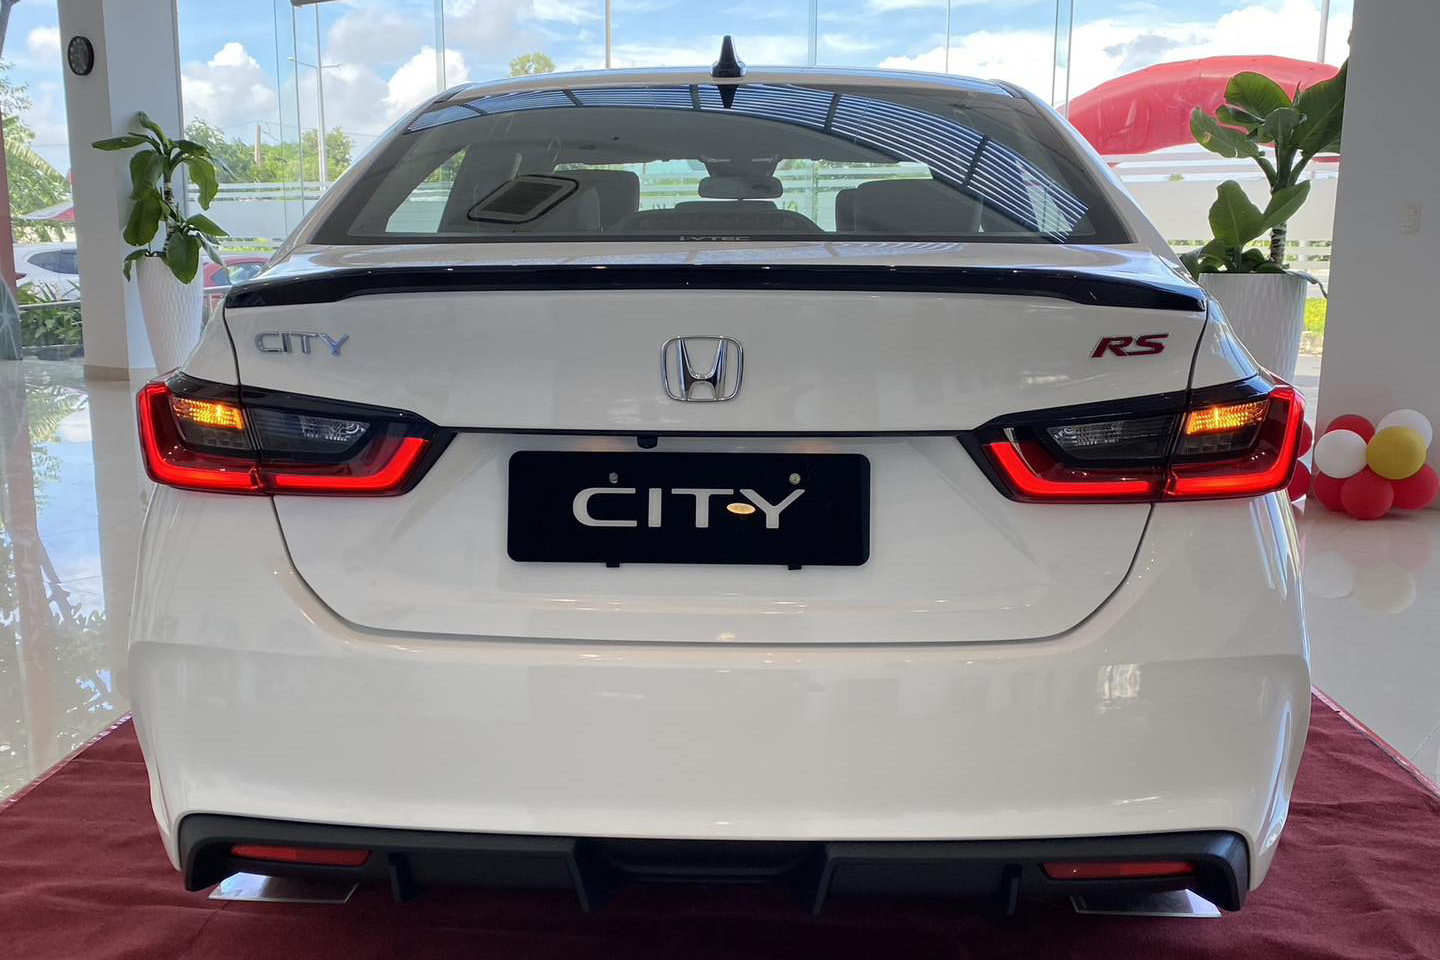 Honda City 2023 mới bán đã giảm giá tại đại lý: Giá thực tế rẻ hơn niêm yết bản cũ, thêm sức cạnh tranh khi mới bị Vios lấy ngôi vương - Ảnh 4.